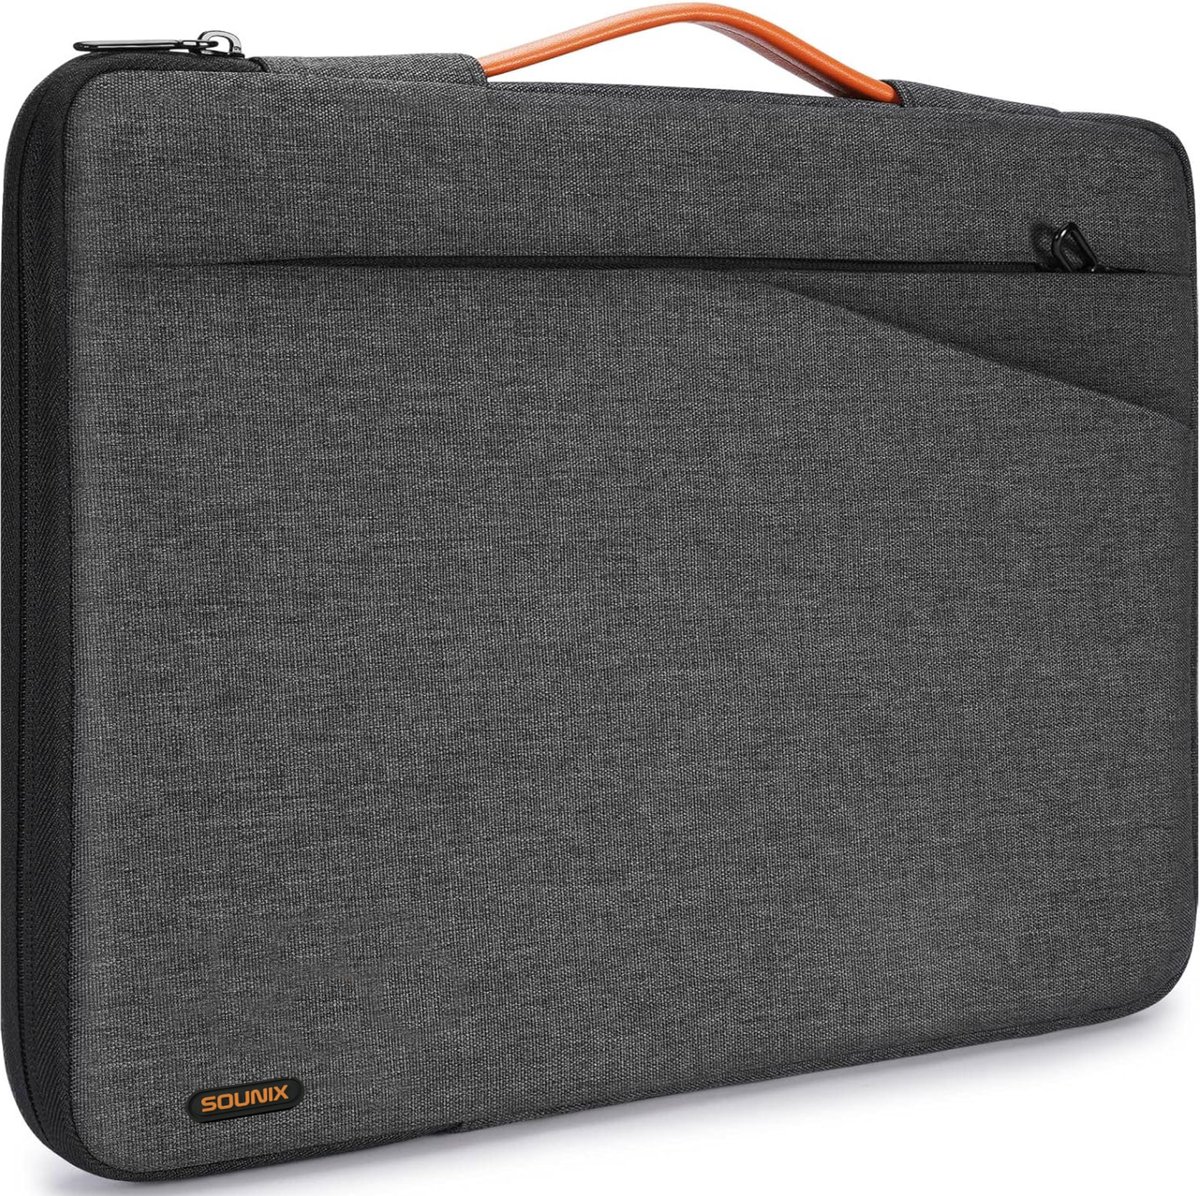 Sounix Laptophoes - 15/15.6 inch - Laptop tas - Laptop hoes - Laptop sleeve - Grijs